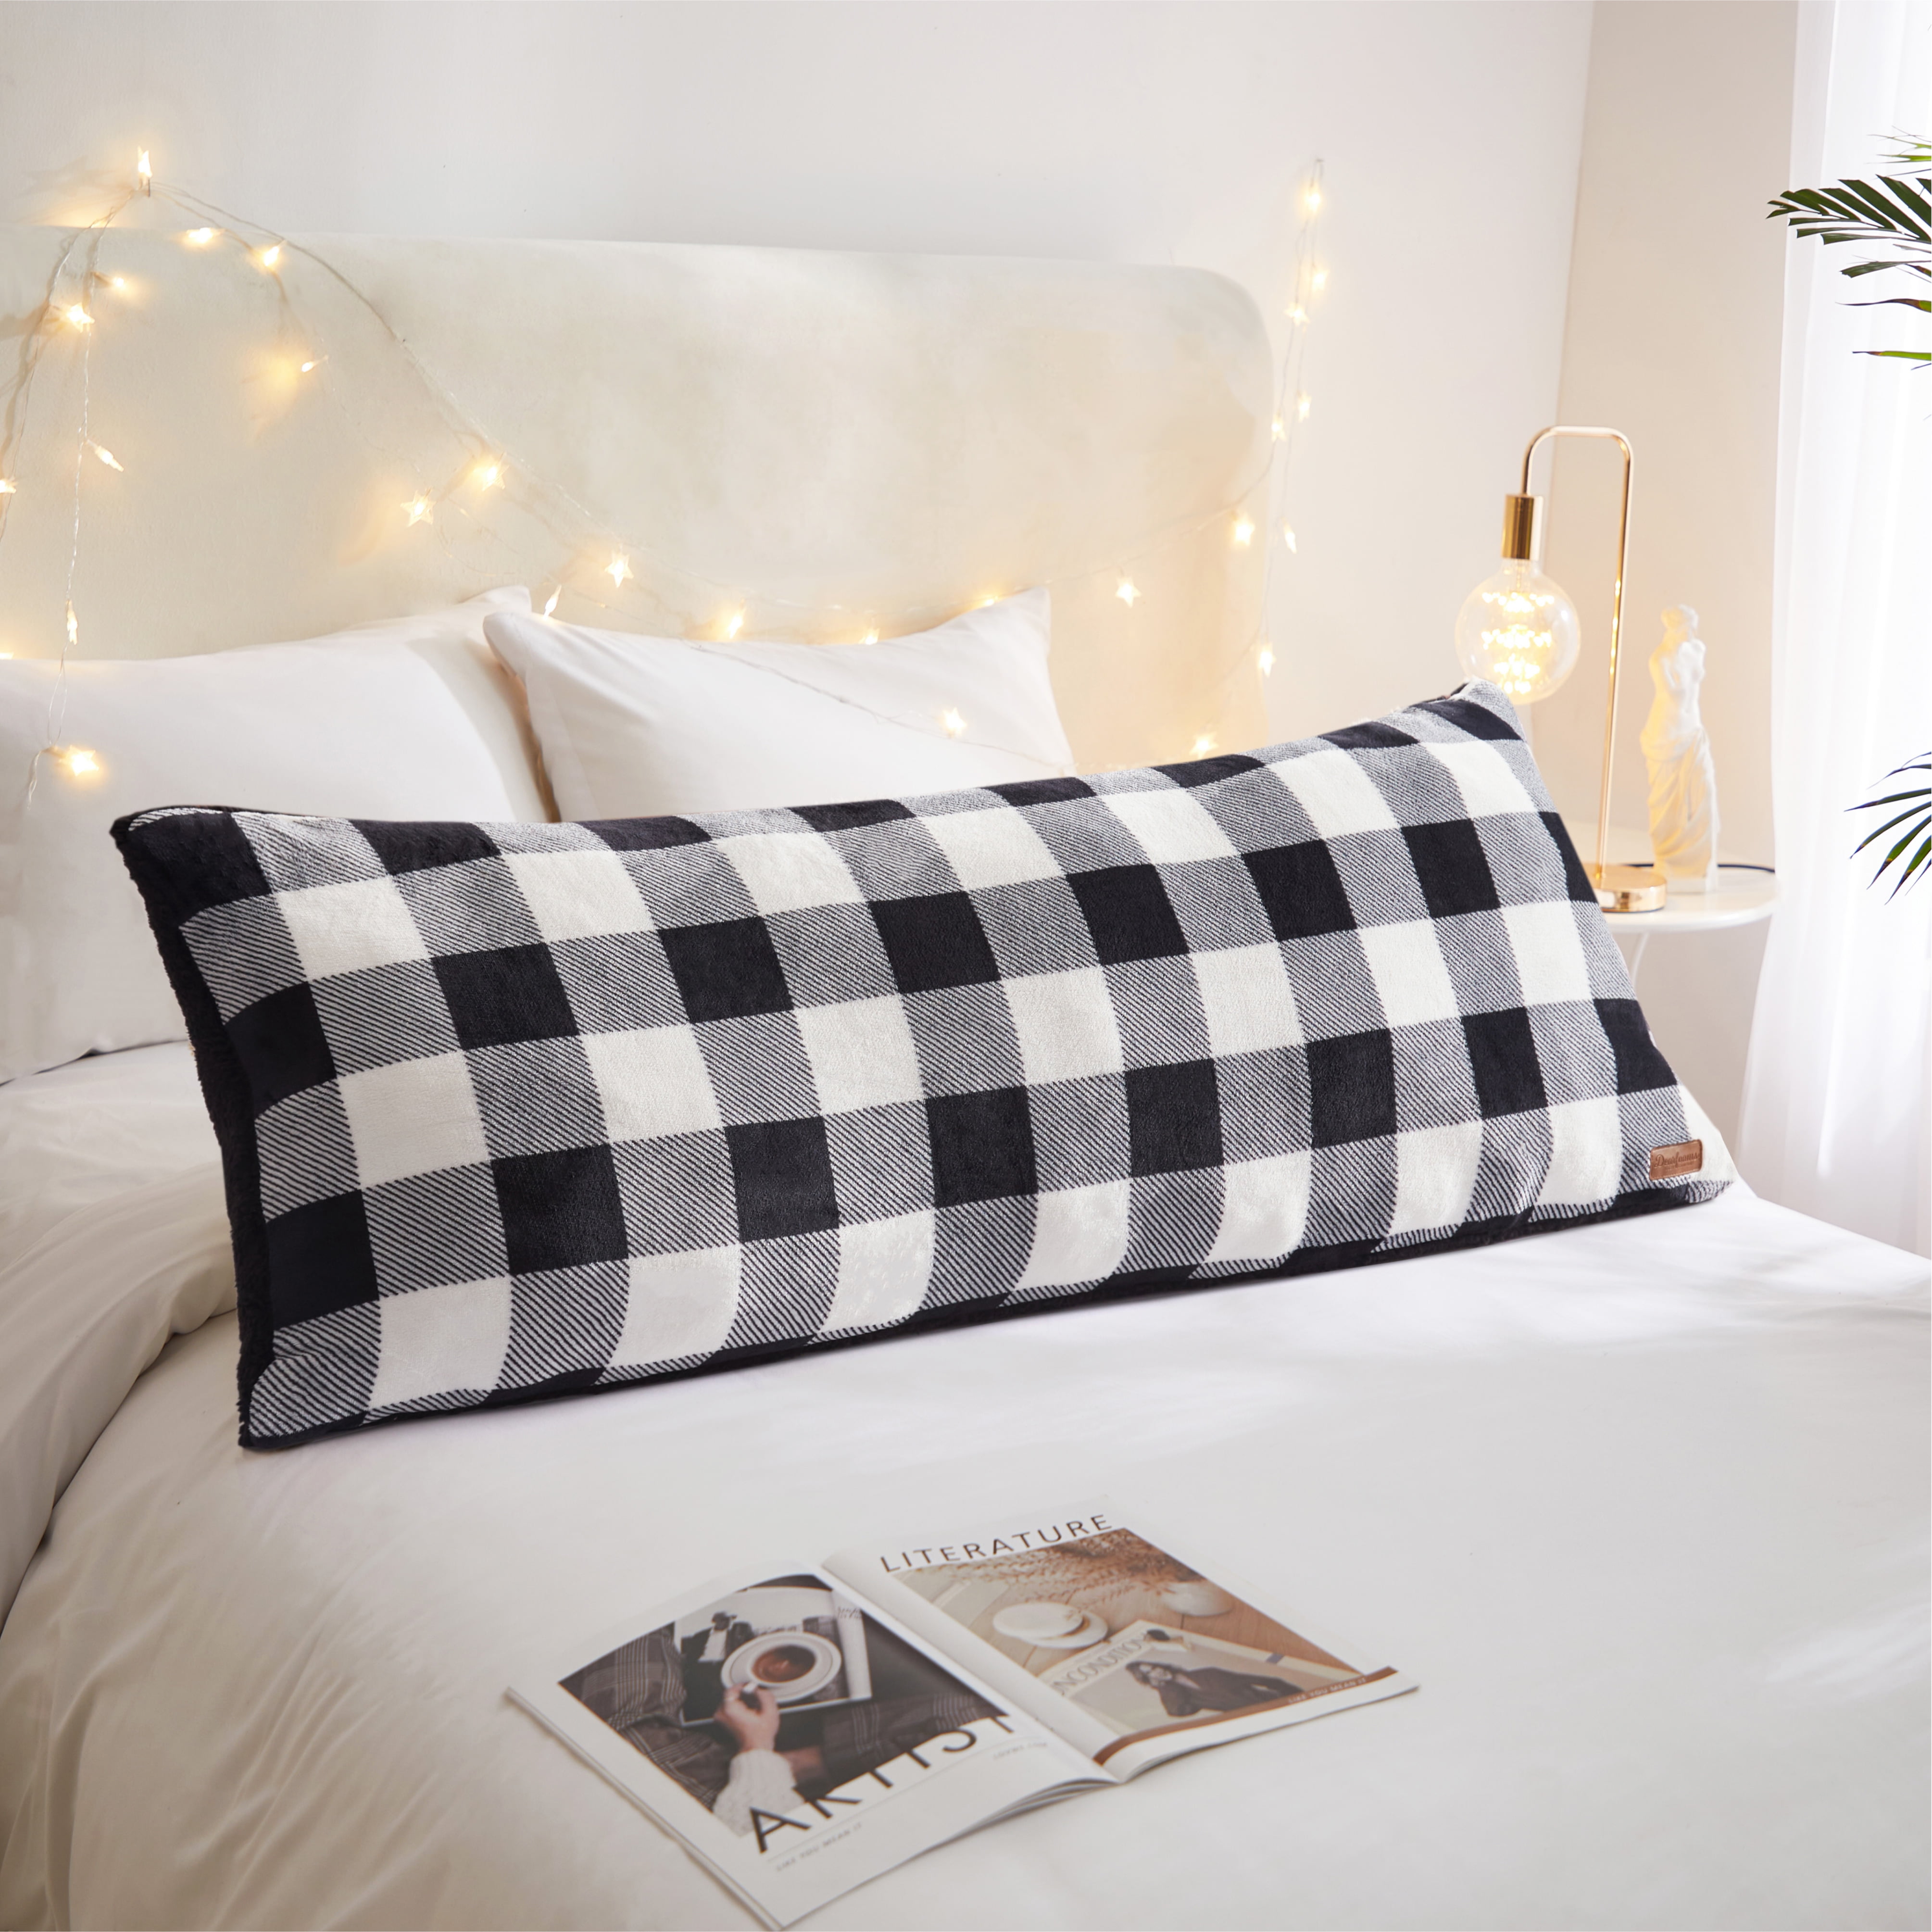 Dearfoams Royal Plush Reverse to Super Soft Sherpa Body Pillow, 20" x 48", Black White Check, Polyester Fill